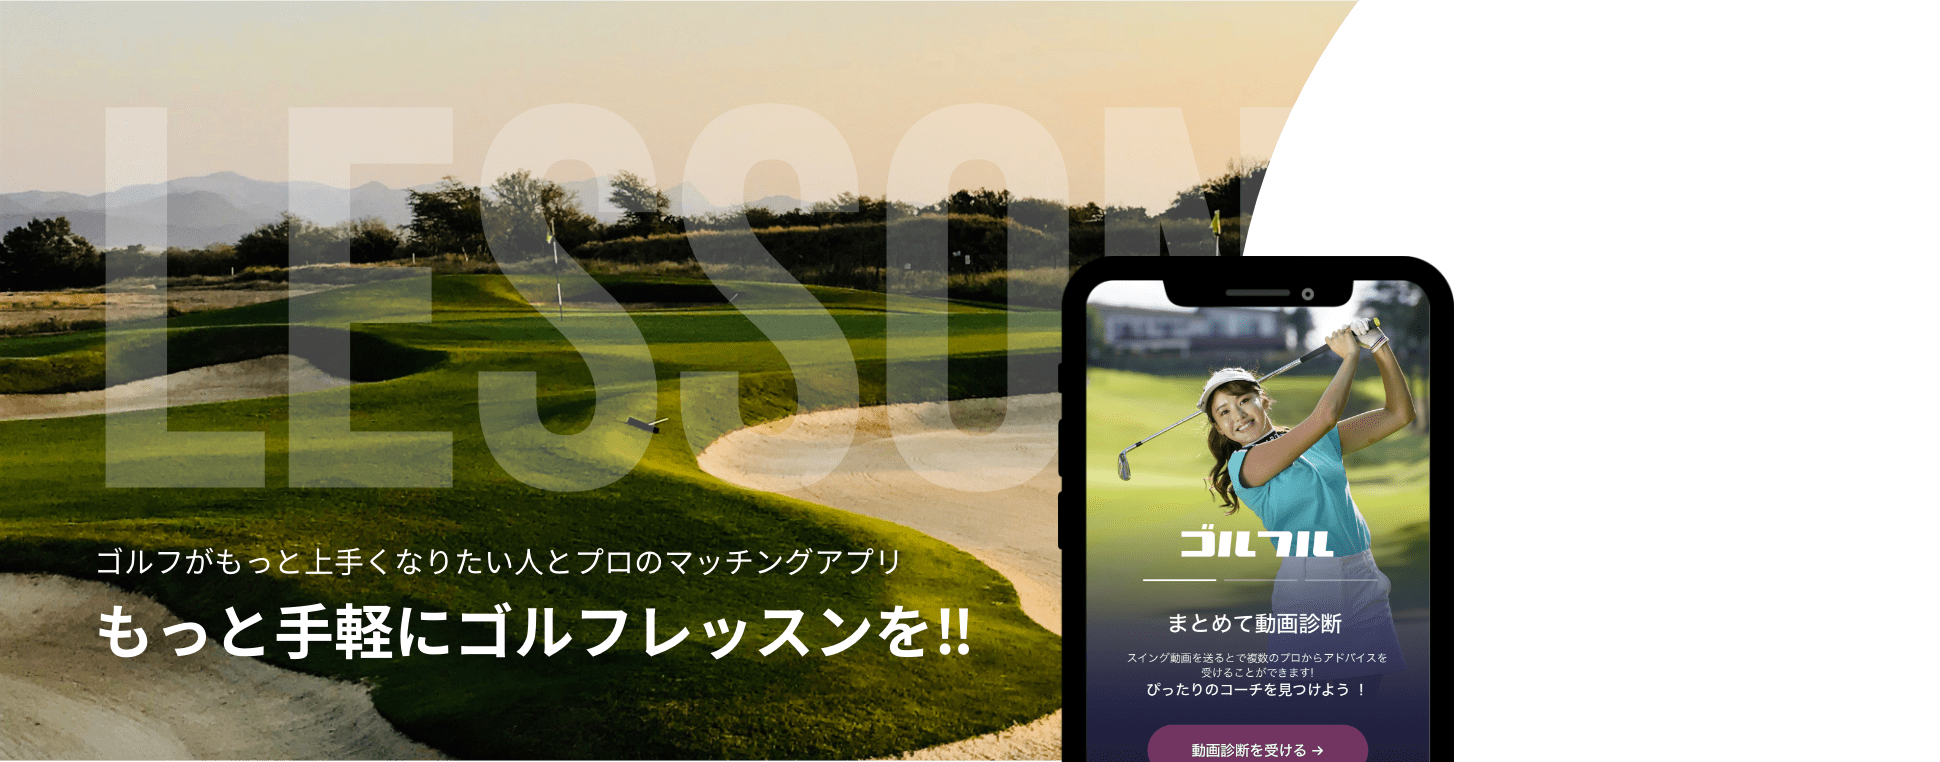 ゴルフがもっと上手くなりたい人とプロのマッチングアプリ もっと気軽にゴルフレッスンを!! 詳細はコチラ 